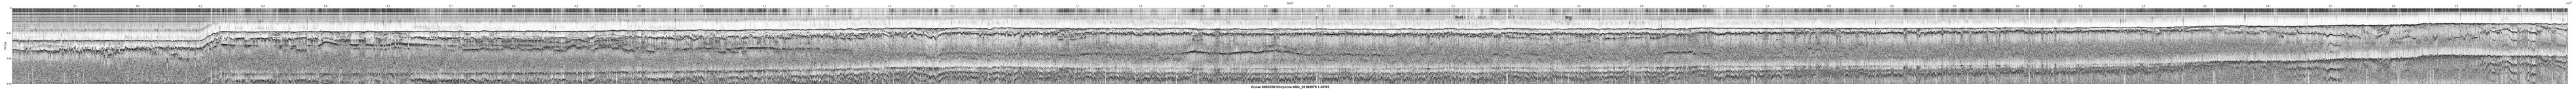 00SCC02 b00c_20 seismic profile image